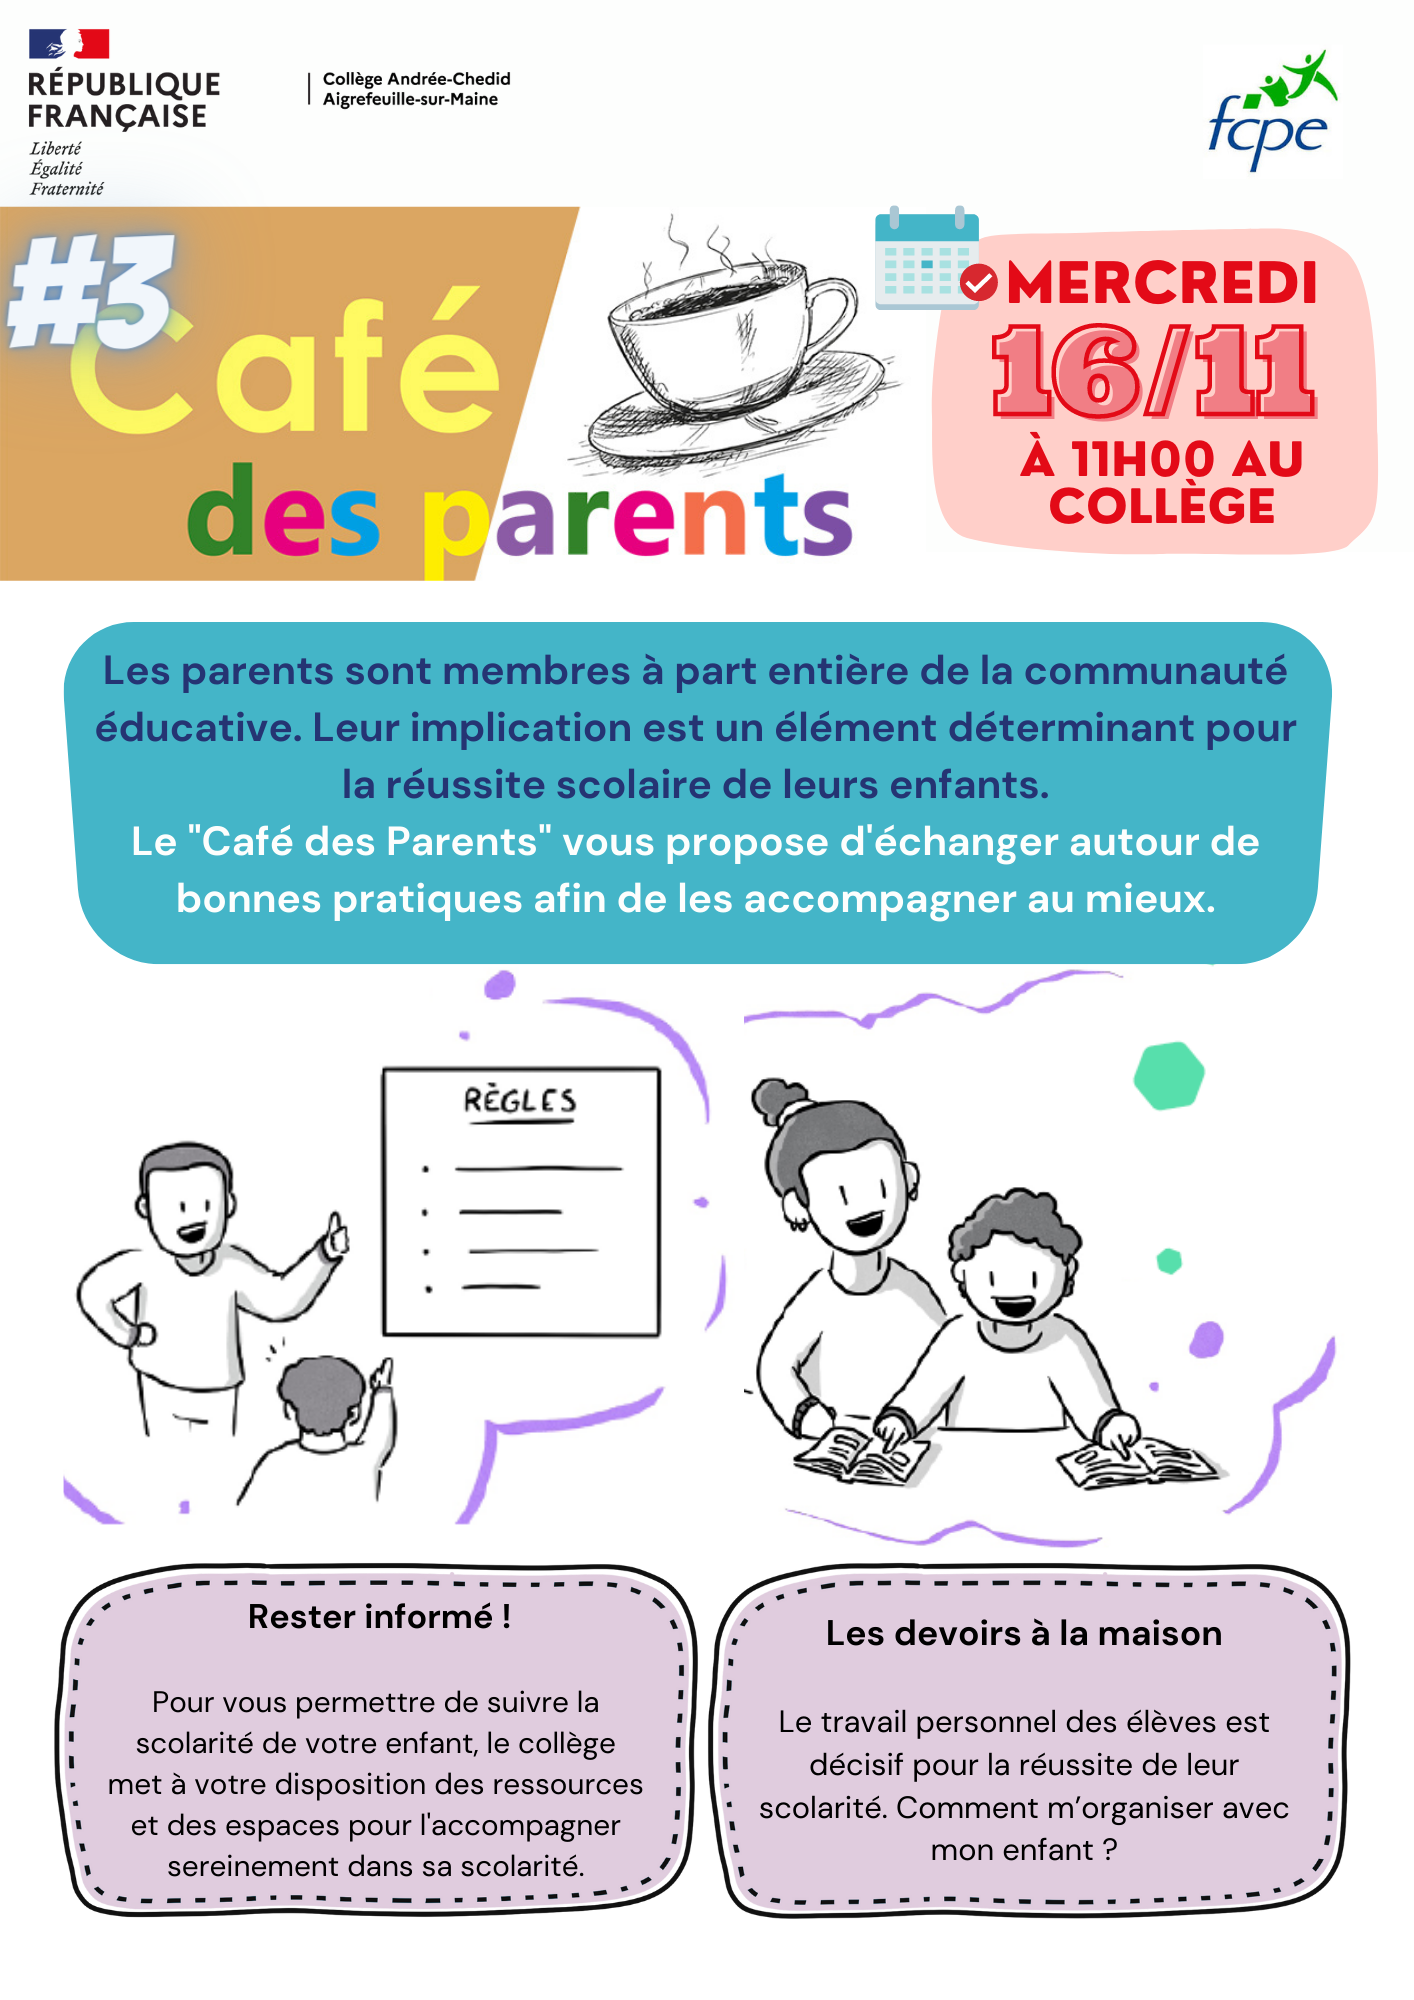 Café des parents : accompagner mon enfant dans sa scolarité